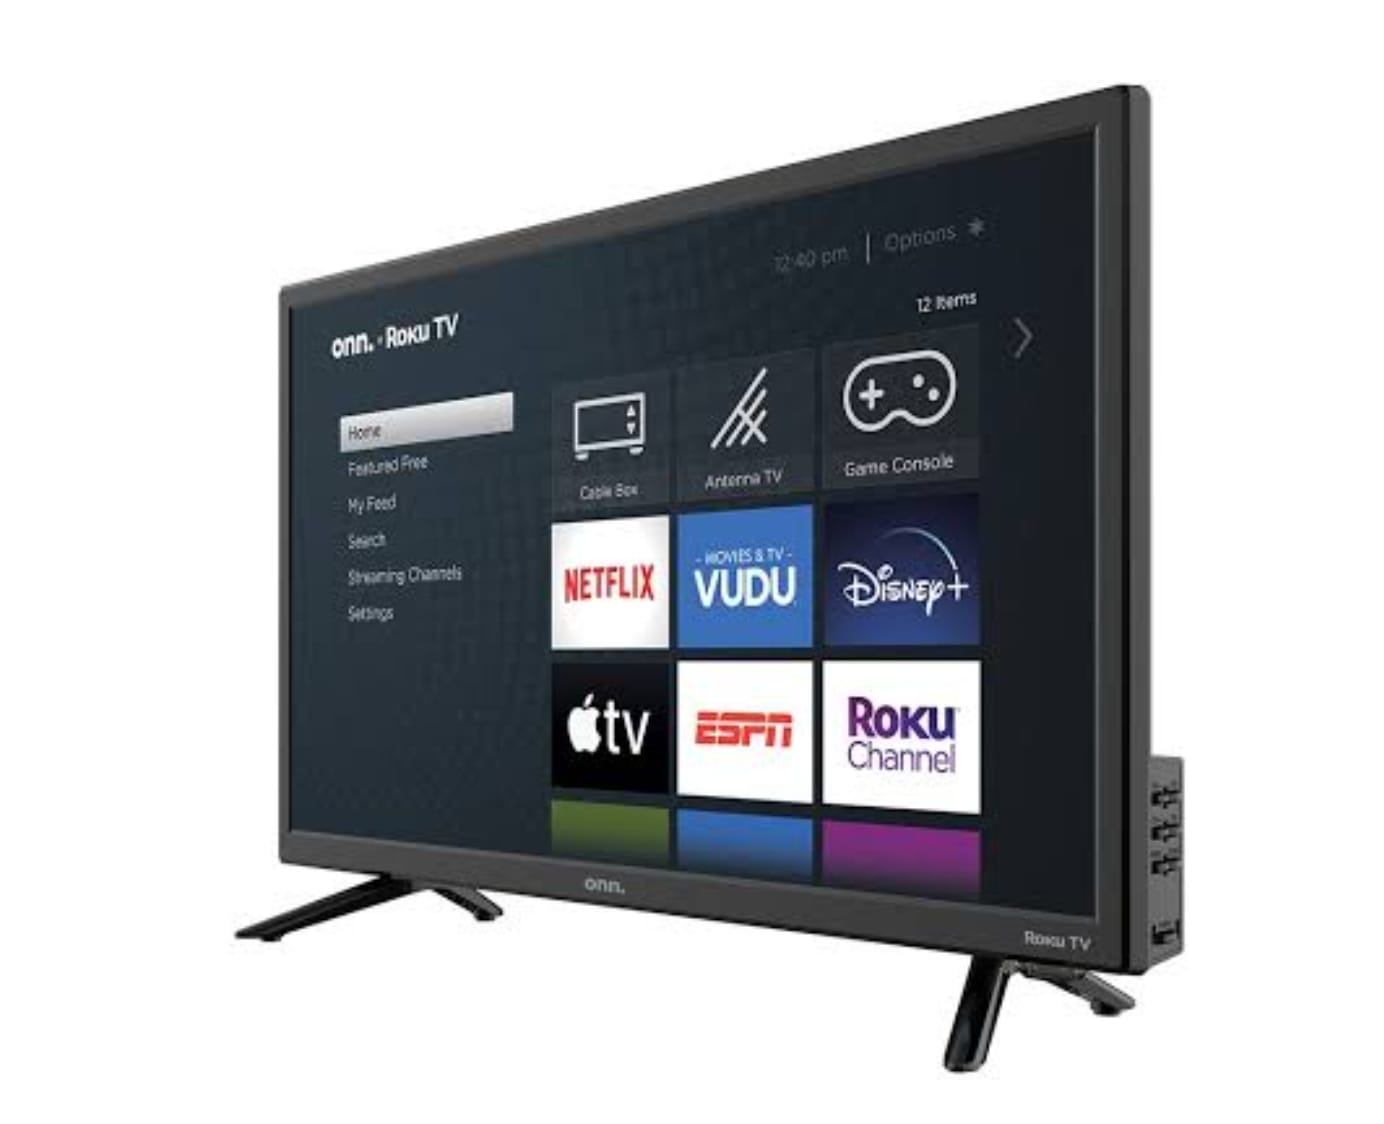 ONN Smart TV LED Class HD (720P) de 24 pulgadas compatible con Netflix,   y Google Assistant (100012590)